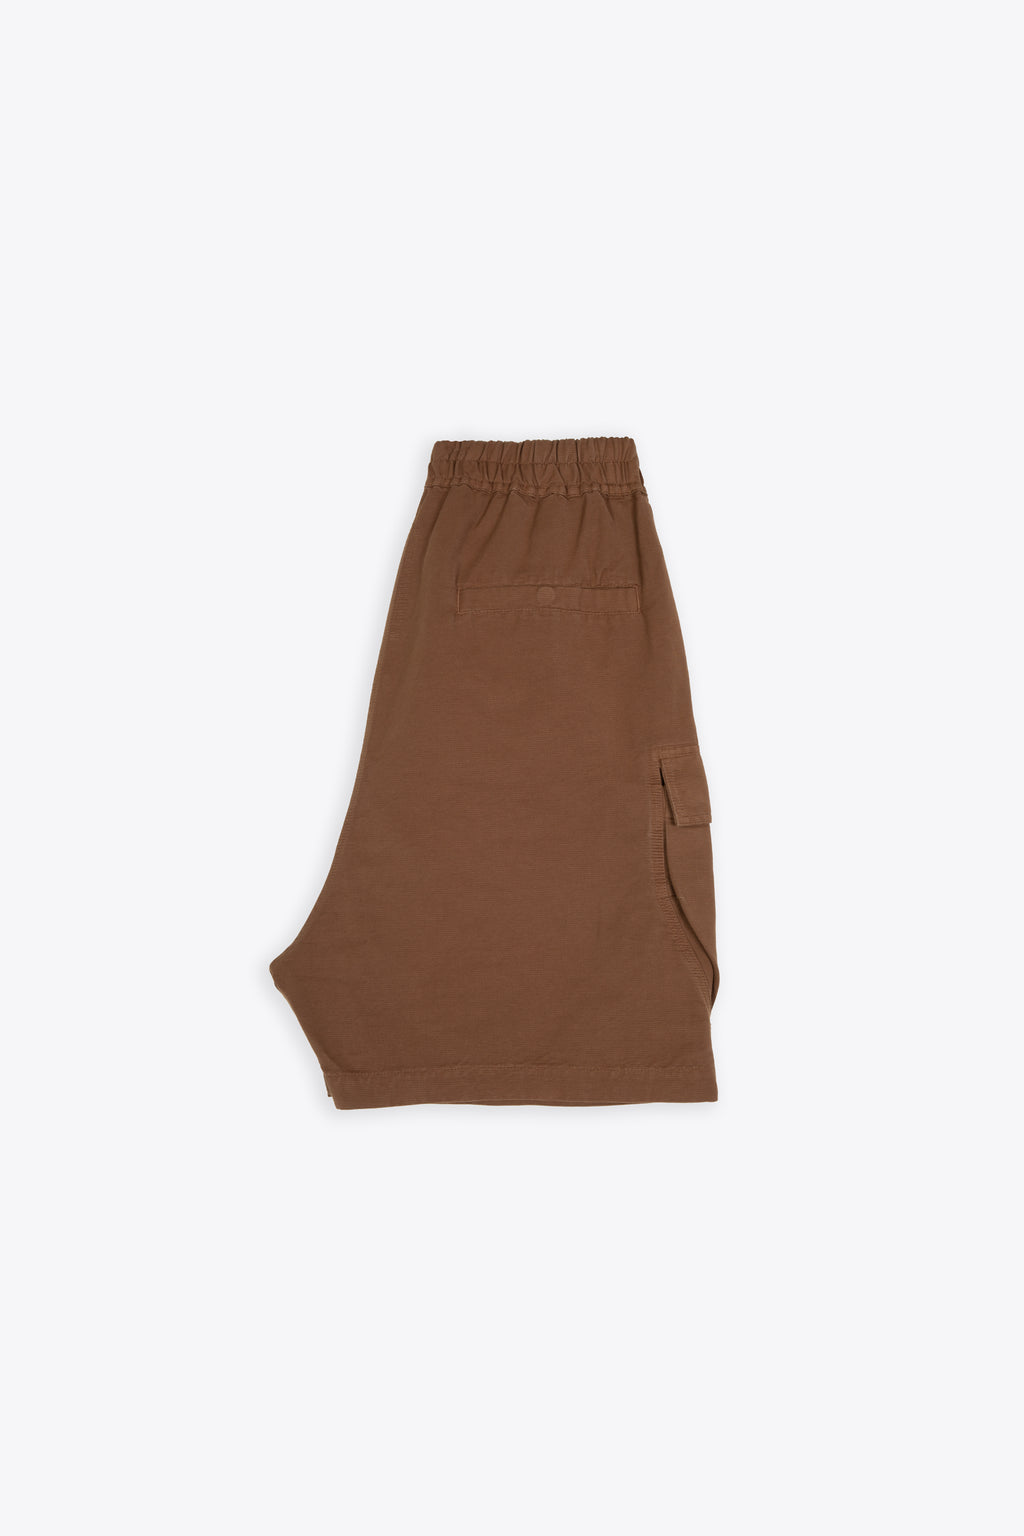 alt-image__Brown-cotton-baggy-cargo-shorts---Cargobela-Shorts